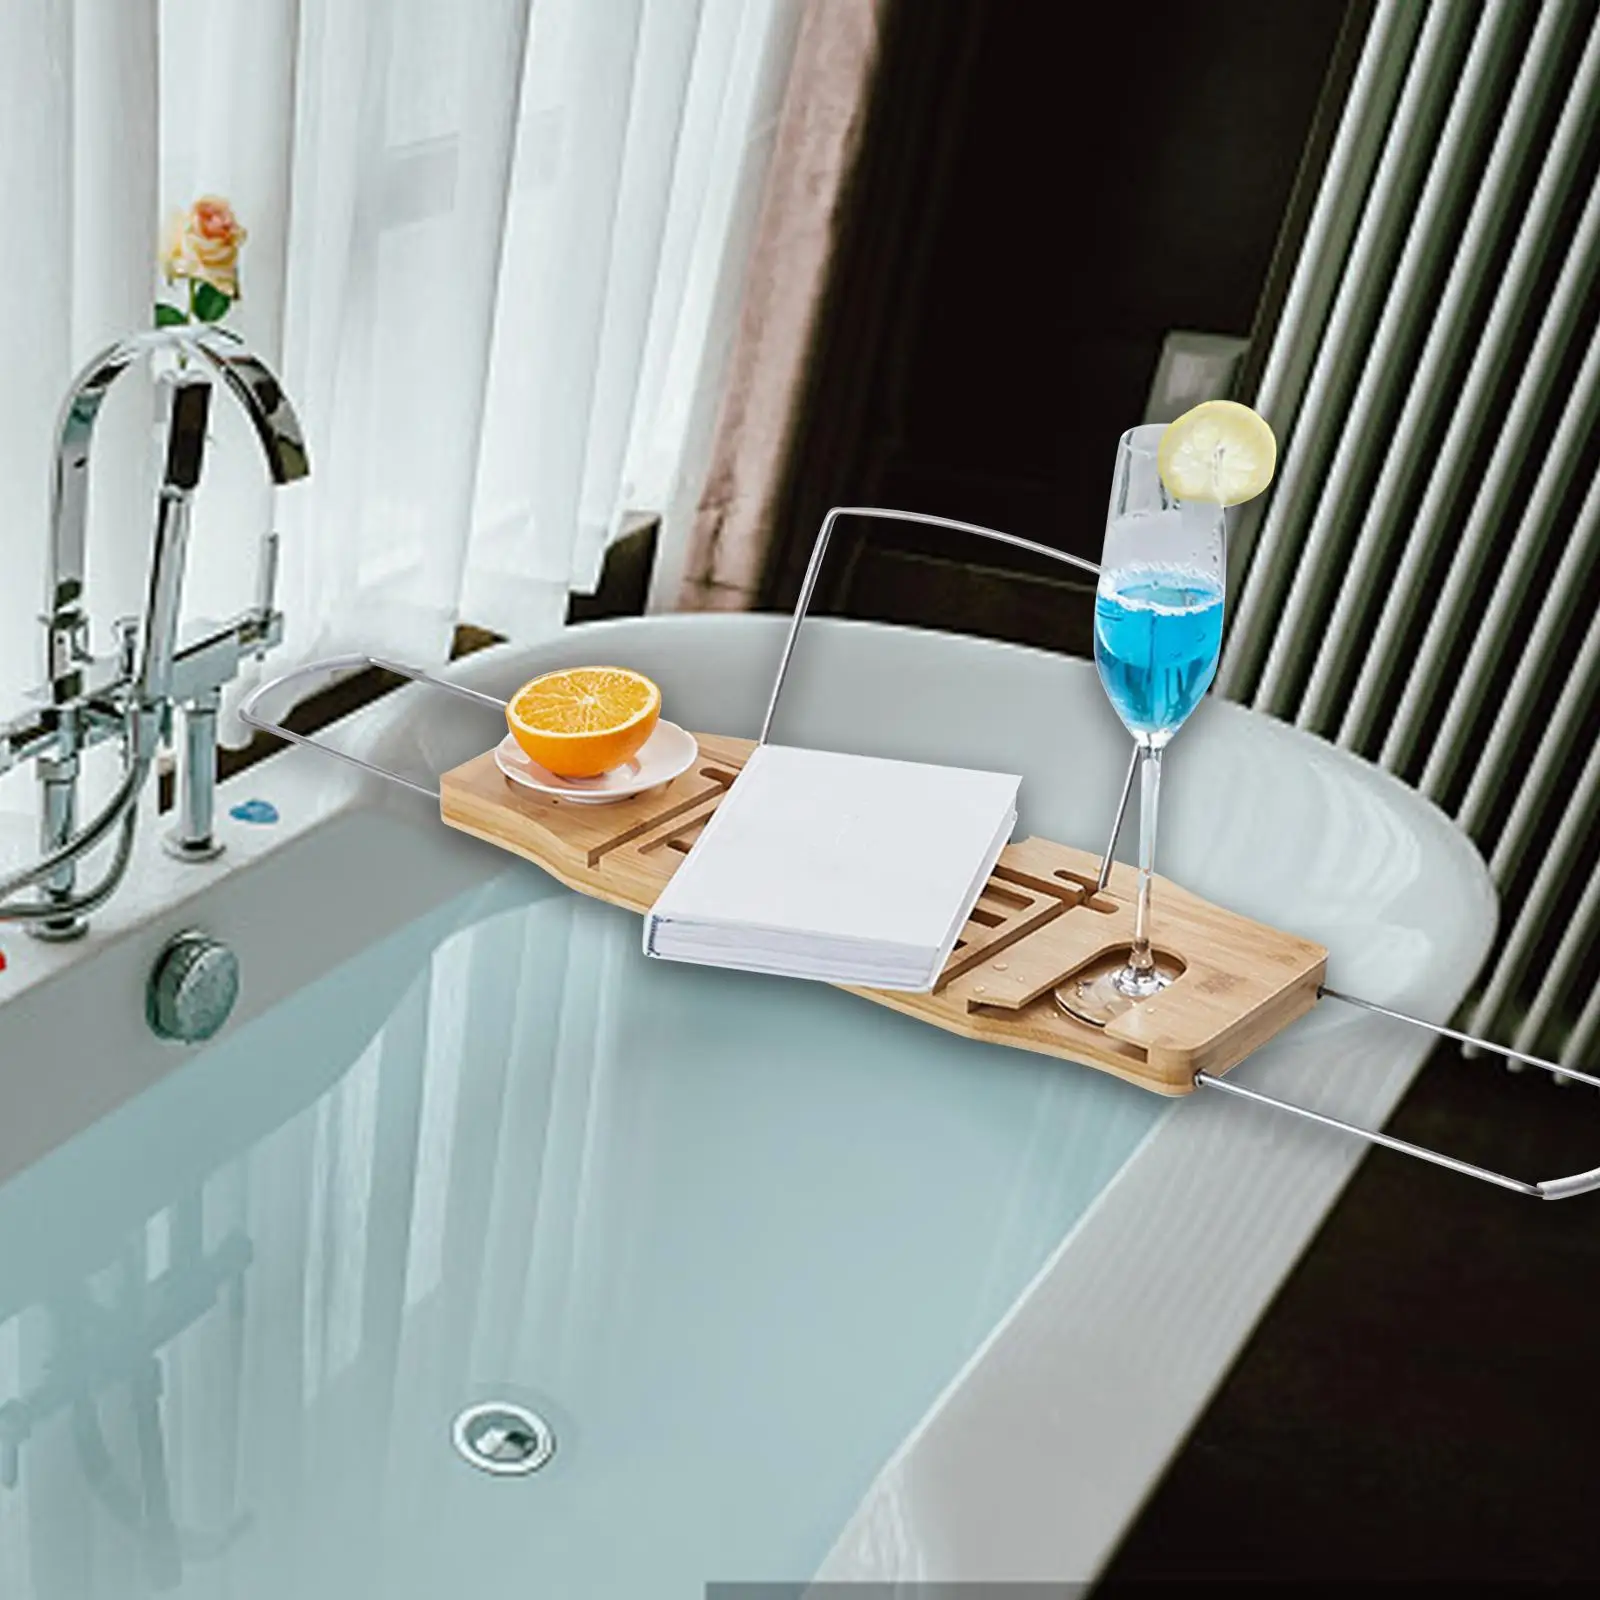 Bath Tub Caddy Bath Tub Tray Shelf Bathroom Gadgets Adjustable Luxury Bath Caddy Tub Table for Tubs Salon Spa Holiday Gifts